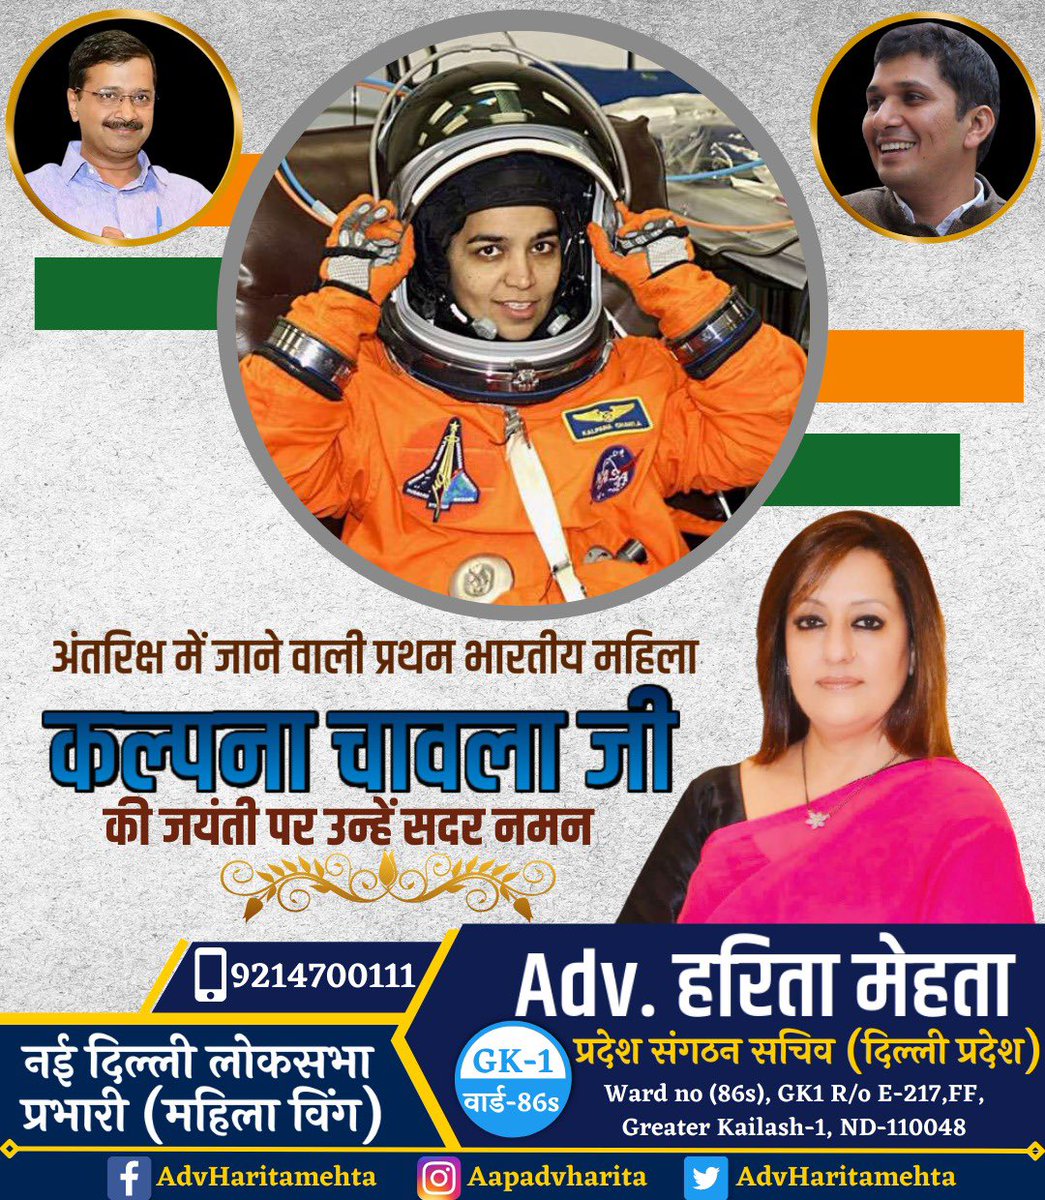 अंतरिक्ष में जाने वाली प्रथम भारतीय महिला कल्पना चावला जी की जयंती पर उन्हें सादर नमन 🙏 

#कल्पनाचावला #kalpnachawla